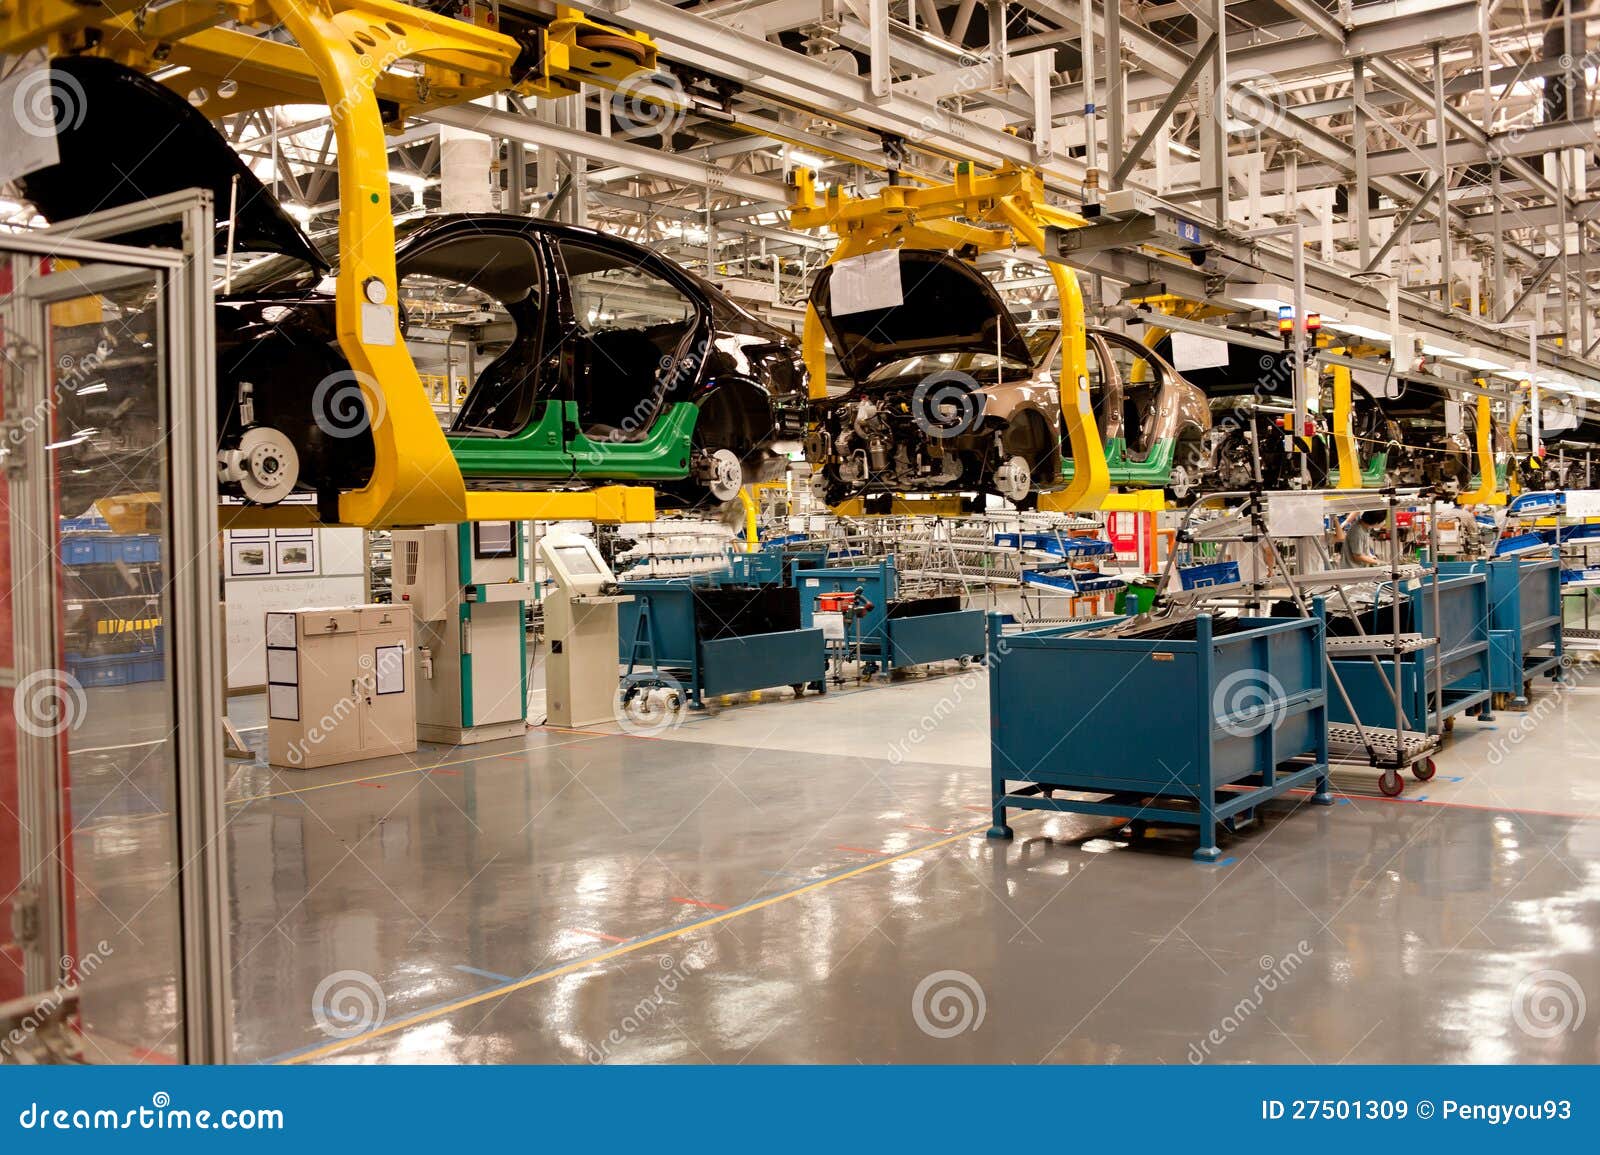 automobile assembly shop production line